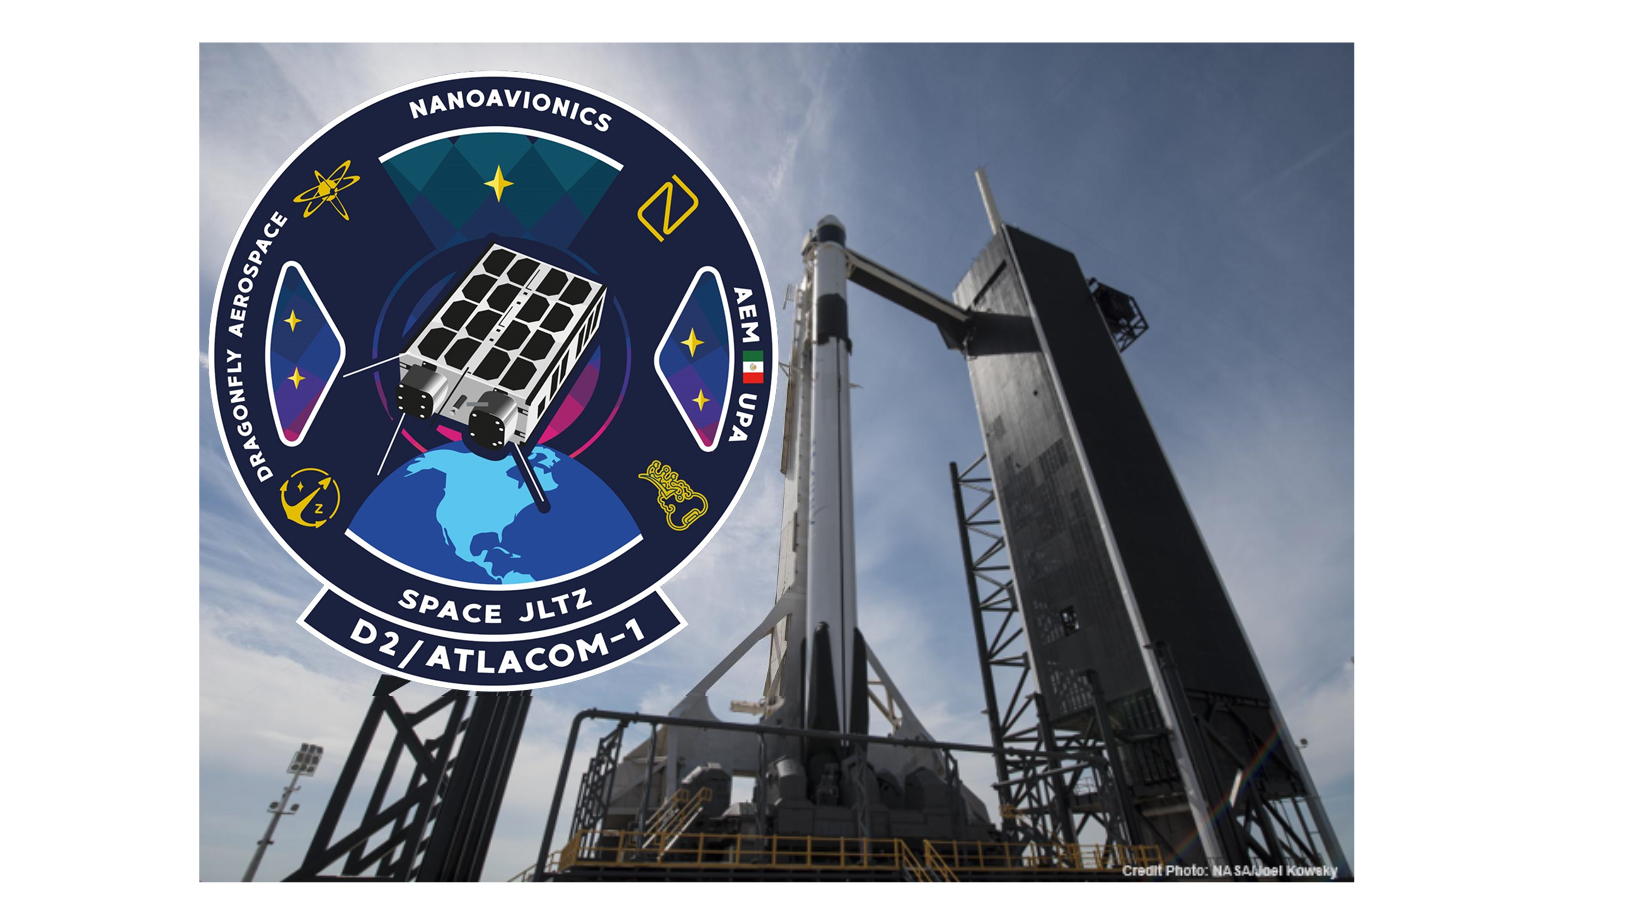 El Nanosatélite “D2/AtlaCom-1” será lanzado por Space X desde las instalaciones de la NASA en Cabo Cañaveral.